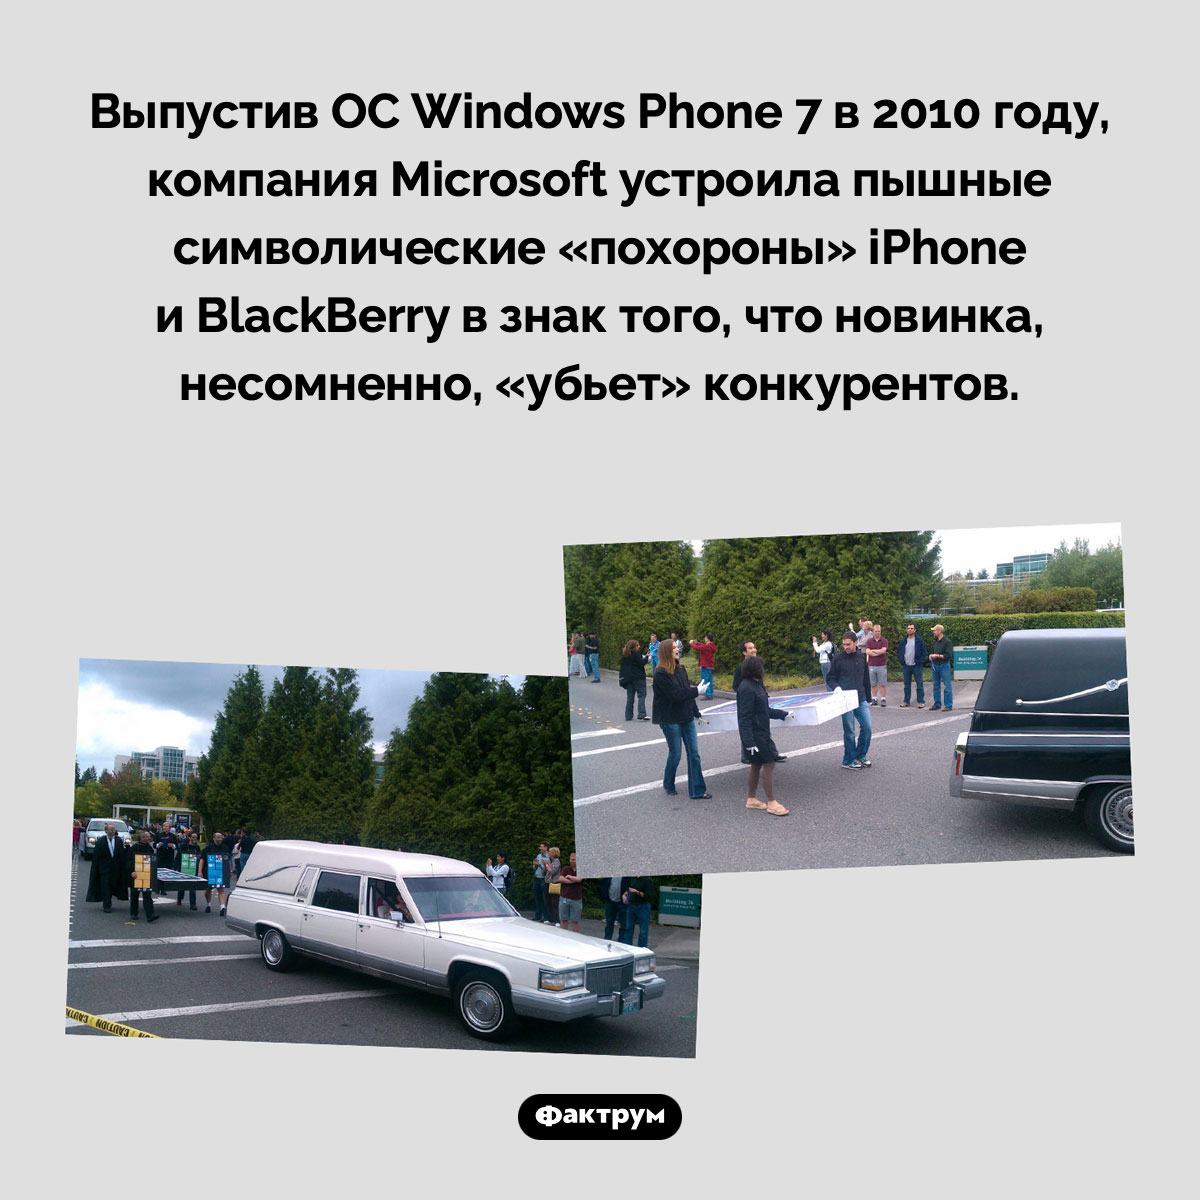 Похороны айфона. Выпустив ОС Windows Phone 7 в 2010 году, компания Microsoft устроила пышные символические «похороны» iPhone и BlackBerry в знак того, что новинка, несомненно, «убьет» конкурентов.